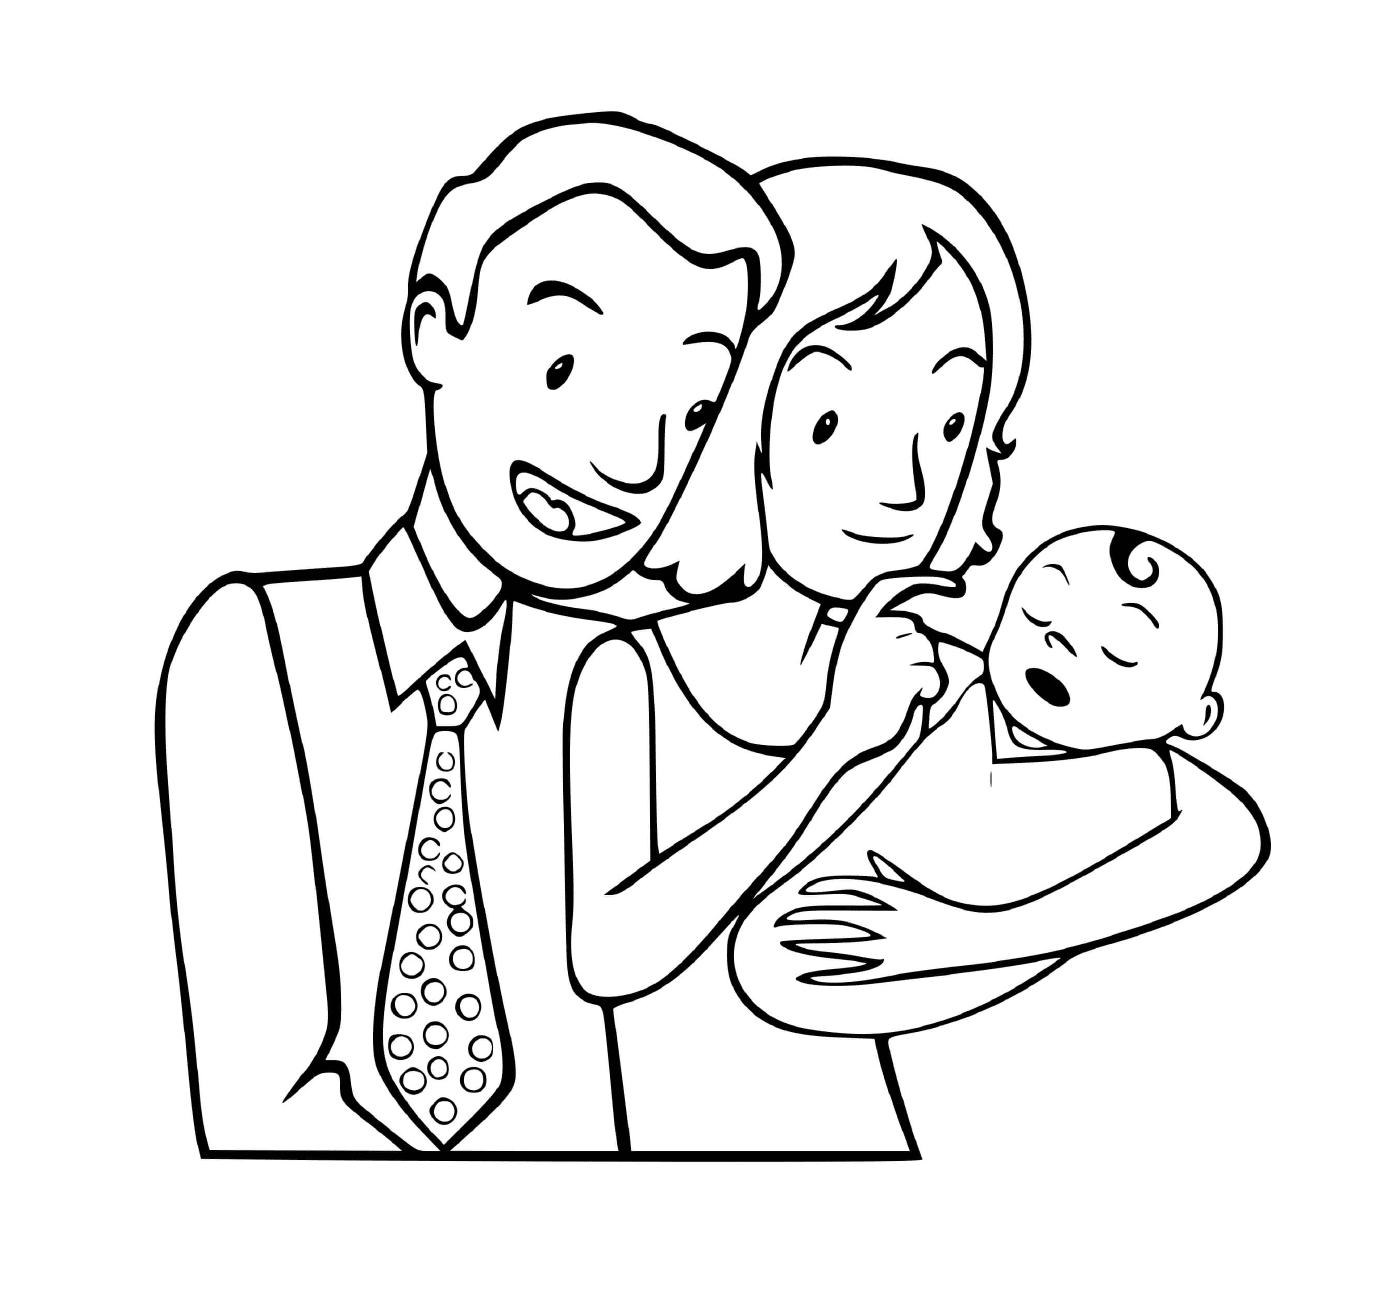  Una piccola famiglia con un neonato 